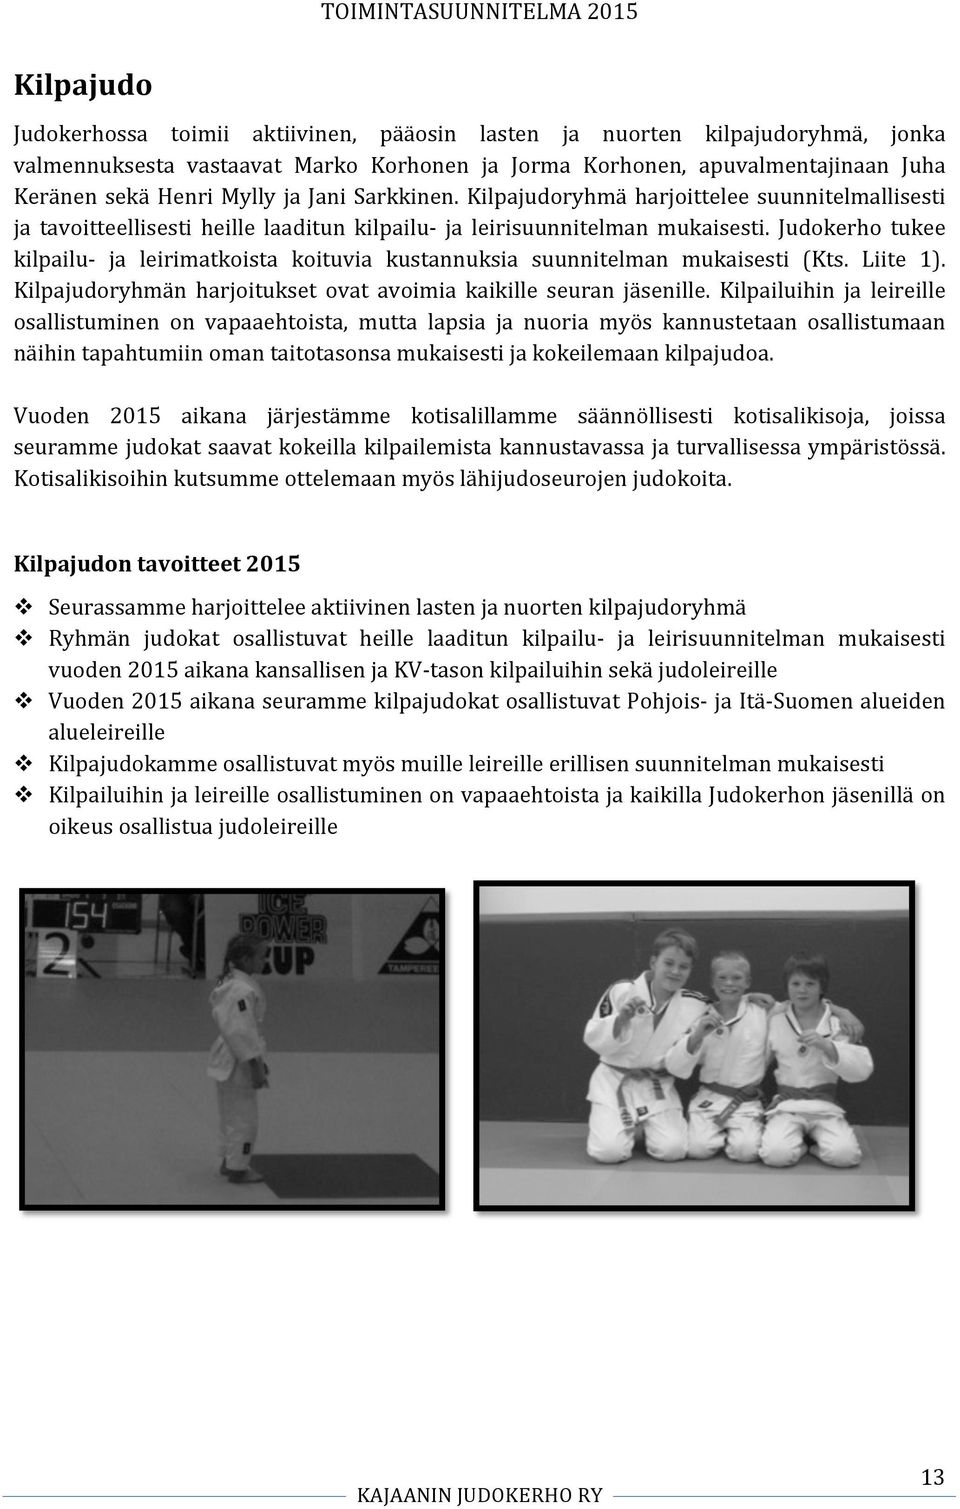 Judokerho tukee kilpailu- ja leirimatkoista koituvia kustannuksia suunnitelman mukaisesti (Kts. Liite 1). Kilpajudoryhmän harjoitukset ovat avoimia kaikille seuran jäsenille.